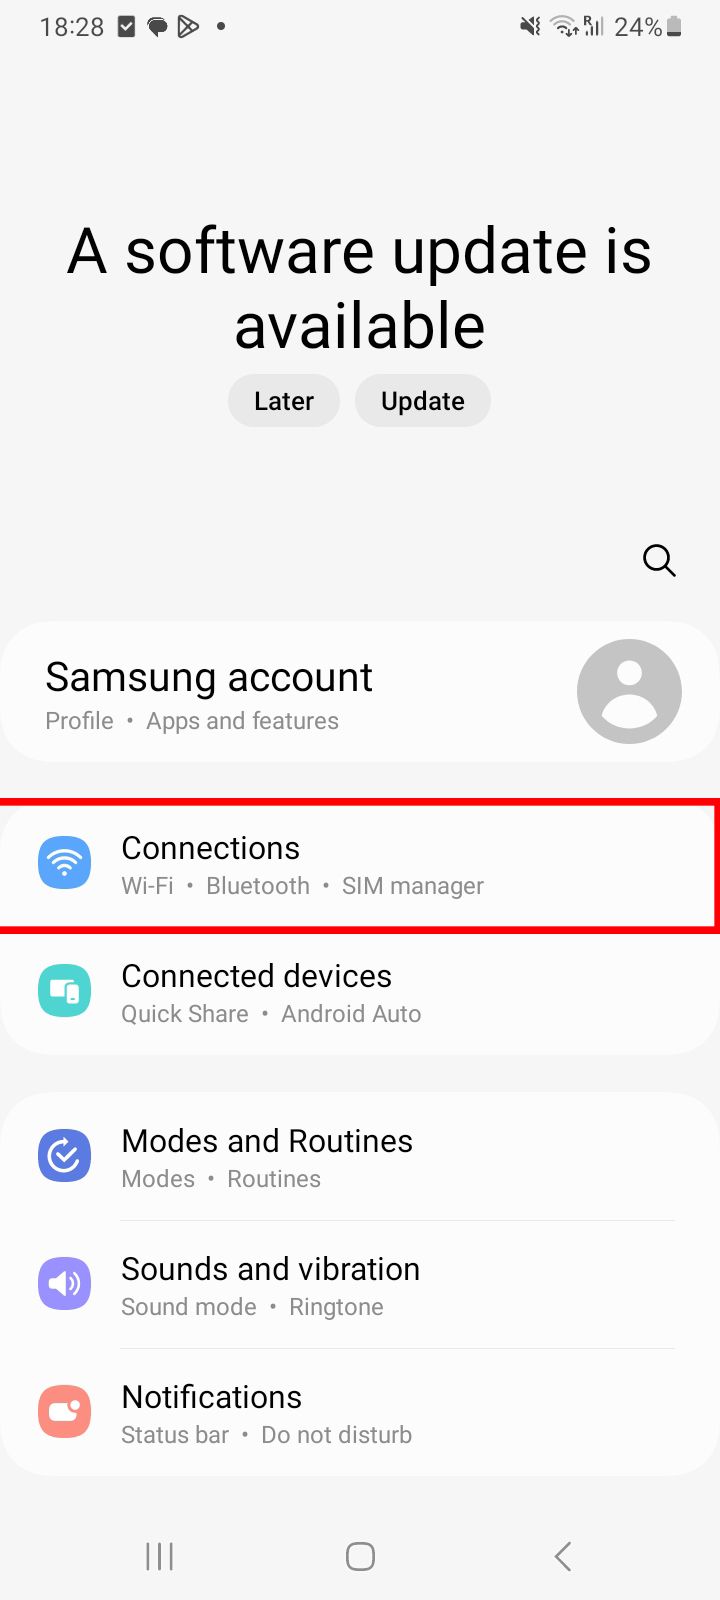 Menu de configurações do Android com opções incluindo "Conexões," "Dispositivos conectados," "Modos e Rotinas," e mais